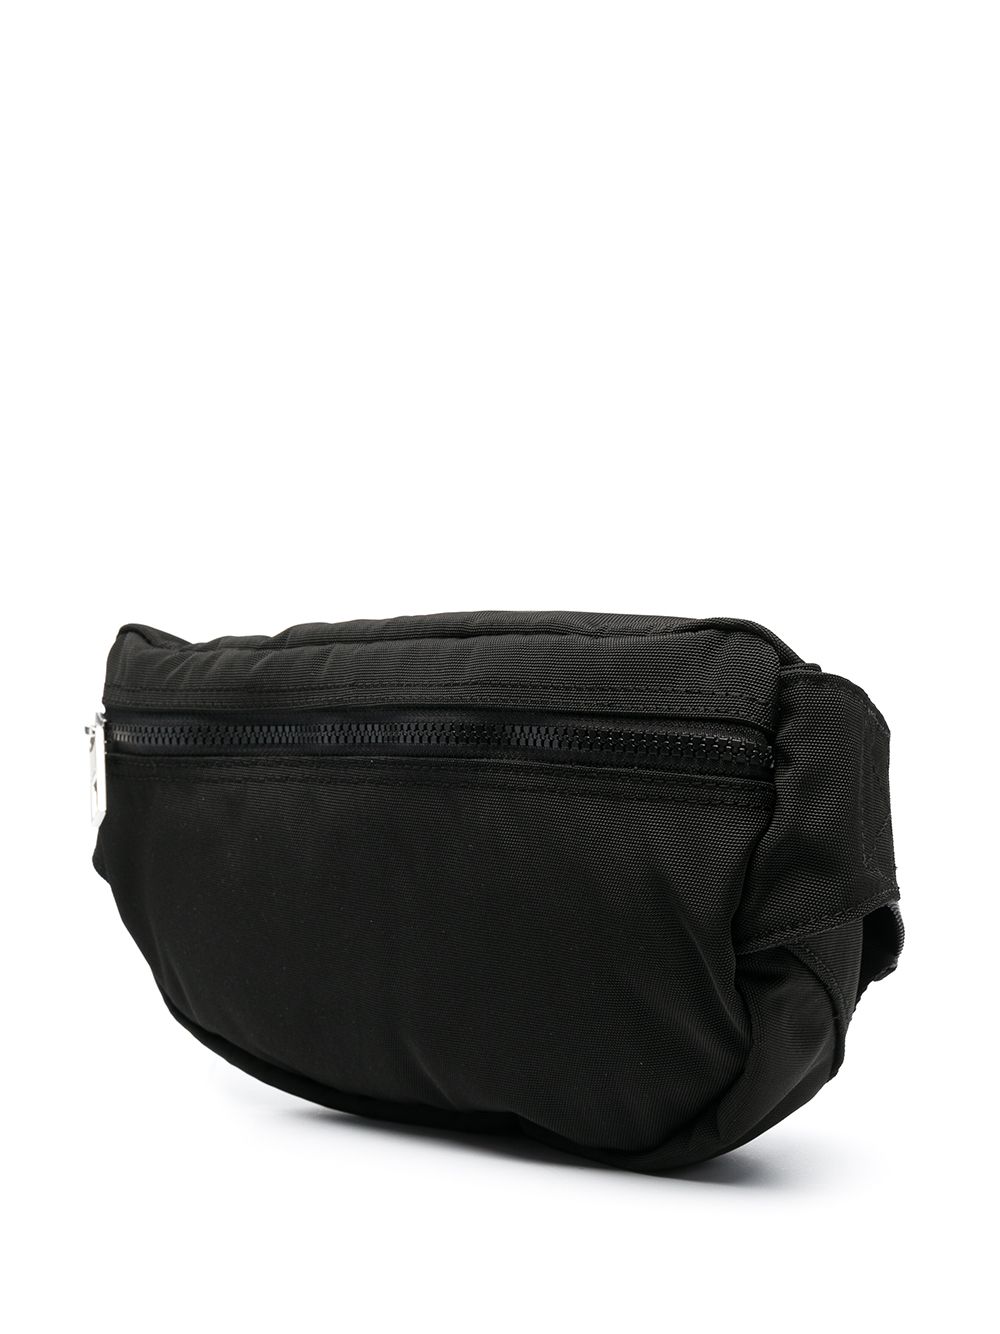 Kenzo Tiger Belt Bag Black - MAISONDEFASHION.COM